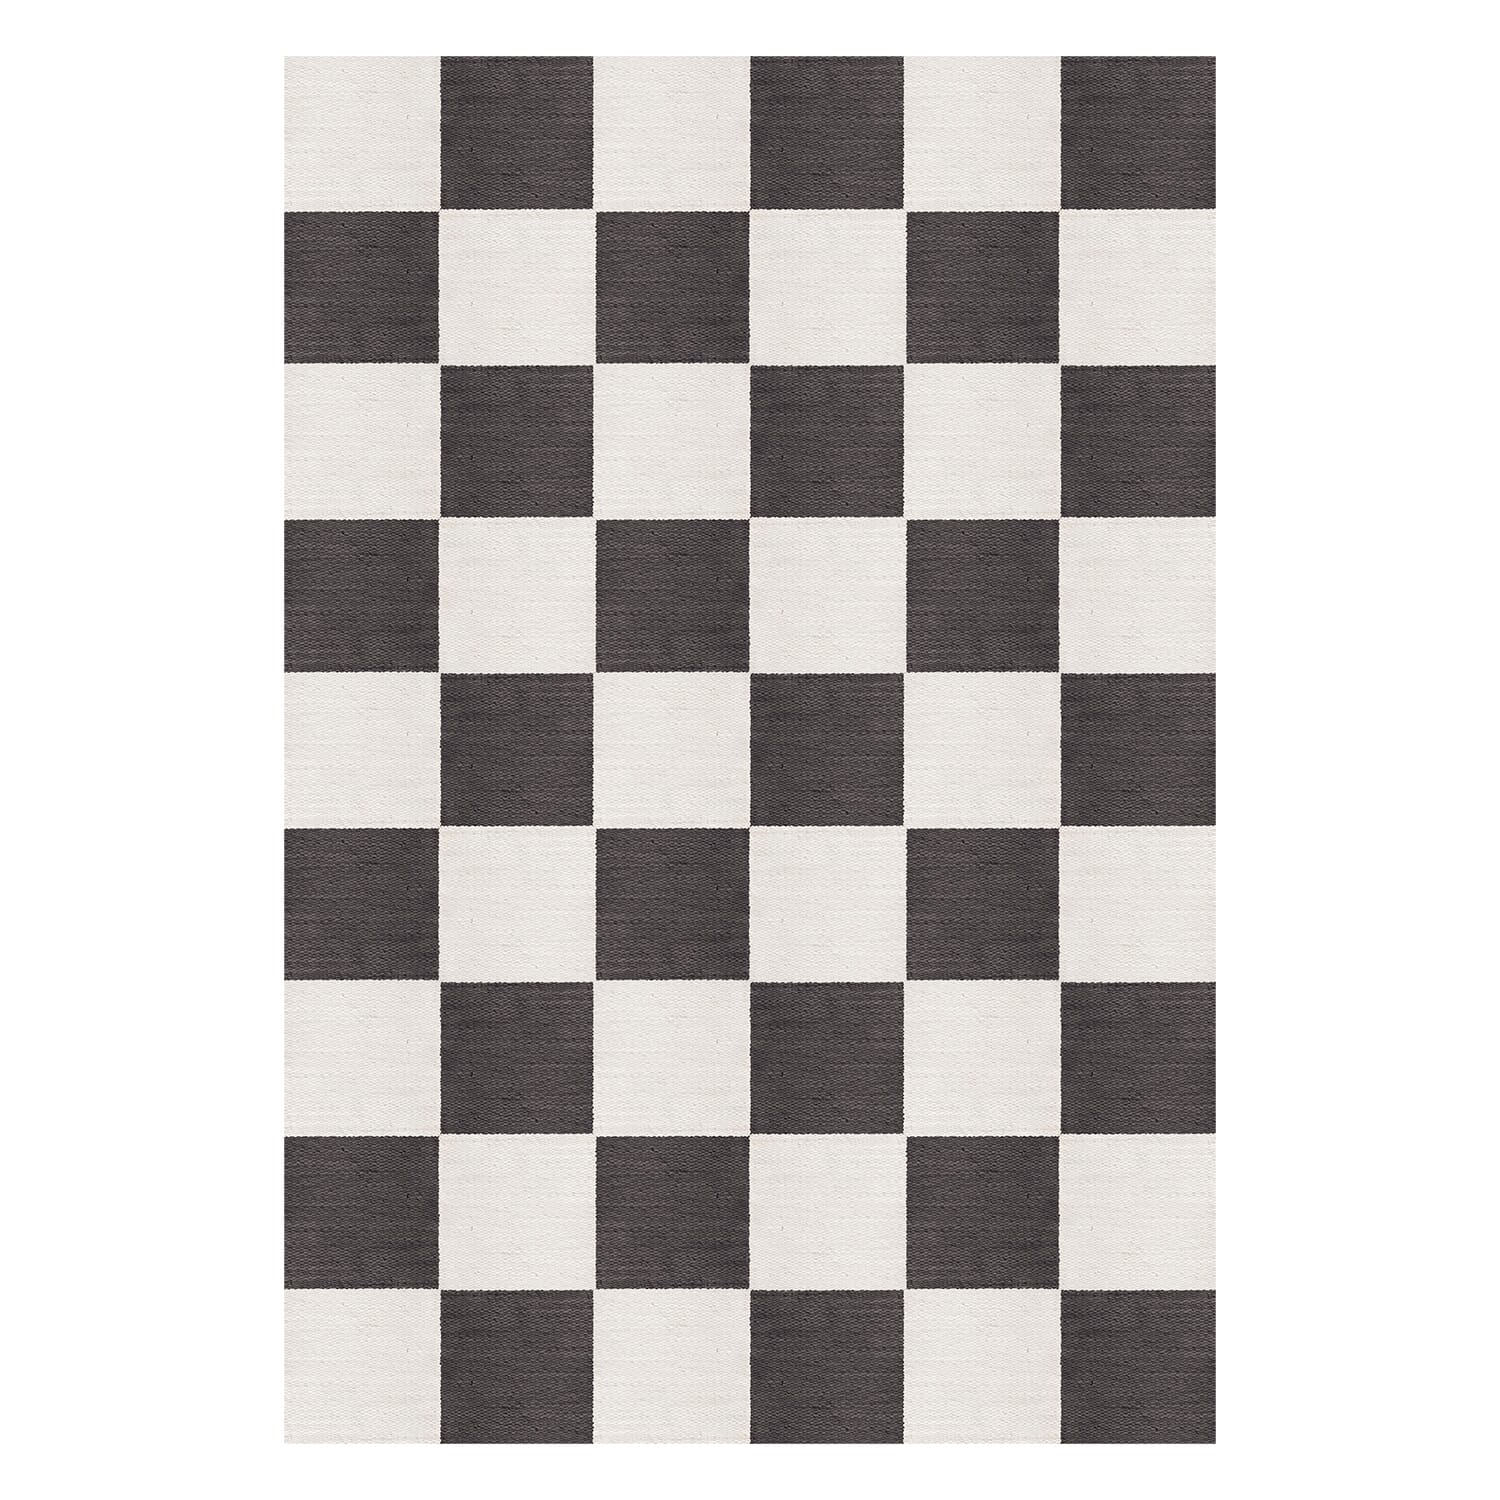 Bilde av Layered - Layered Gulvteppe Chess Black And White - Lunehjem.no - Interiør På Nett